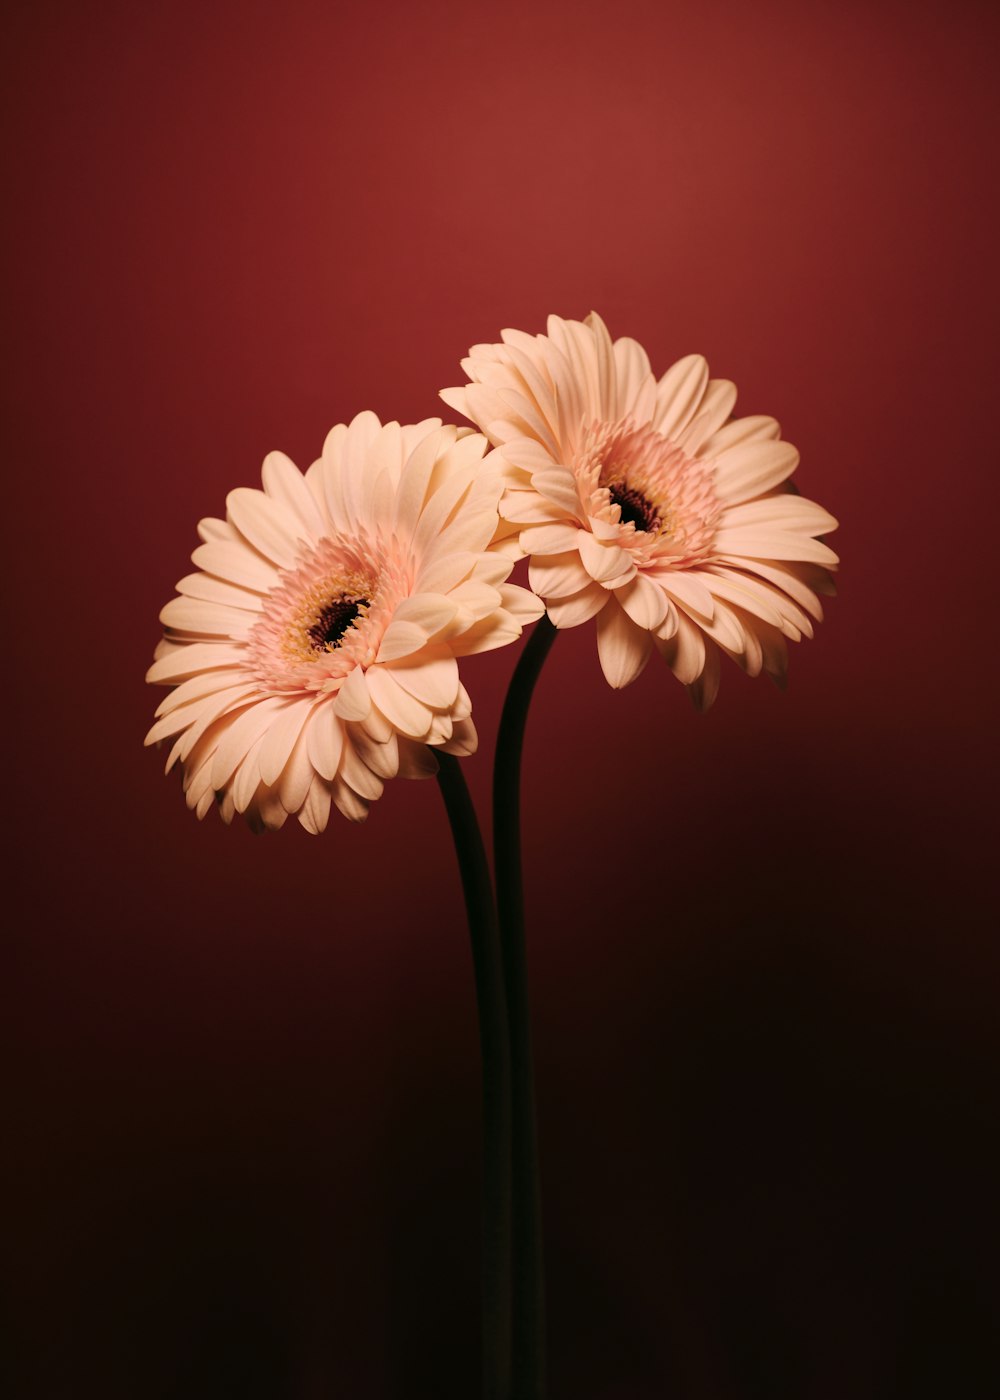 fiore rosa e bianco nella fotografia ravvicinata